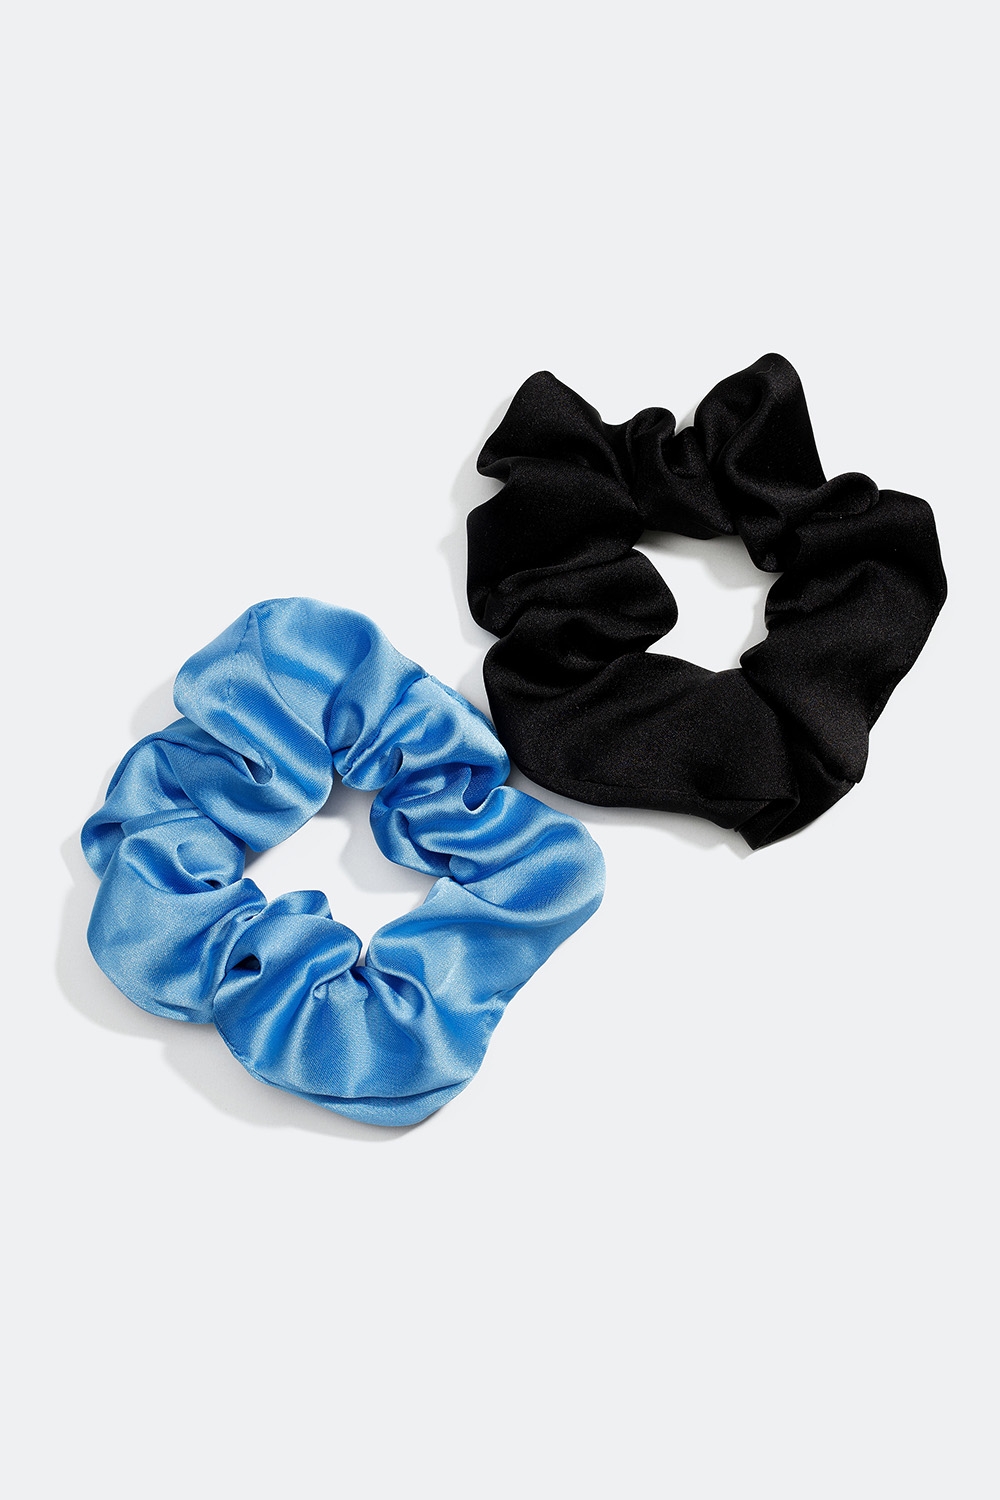 Scrunchies i blå og sort imiteret silke, 2-pak i gruppen Håraccessories / Scrunchies / Flerpak hos Glitter (332000479400)